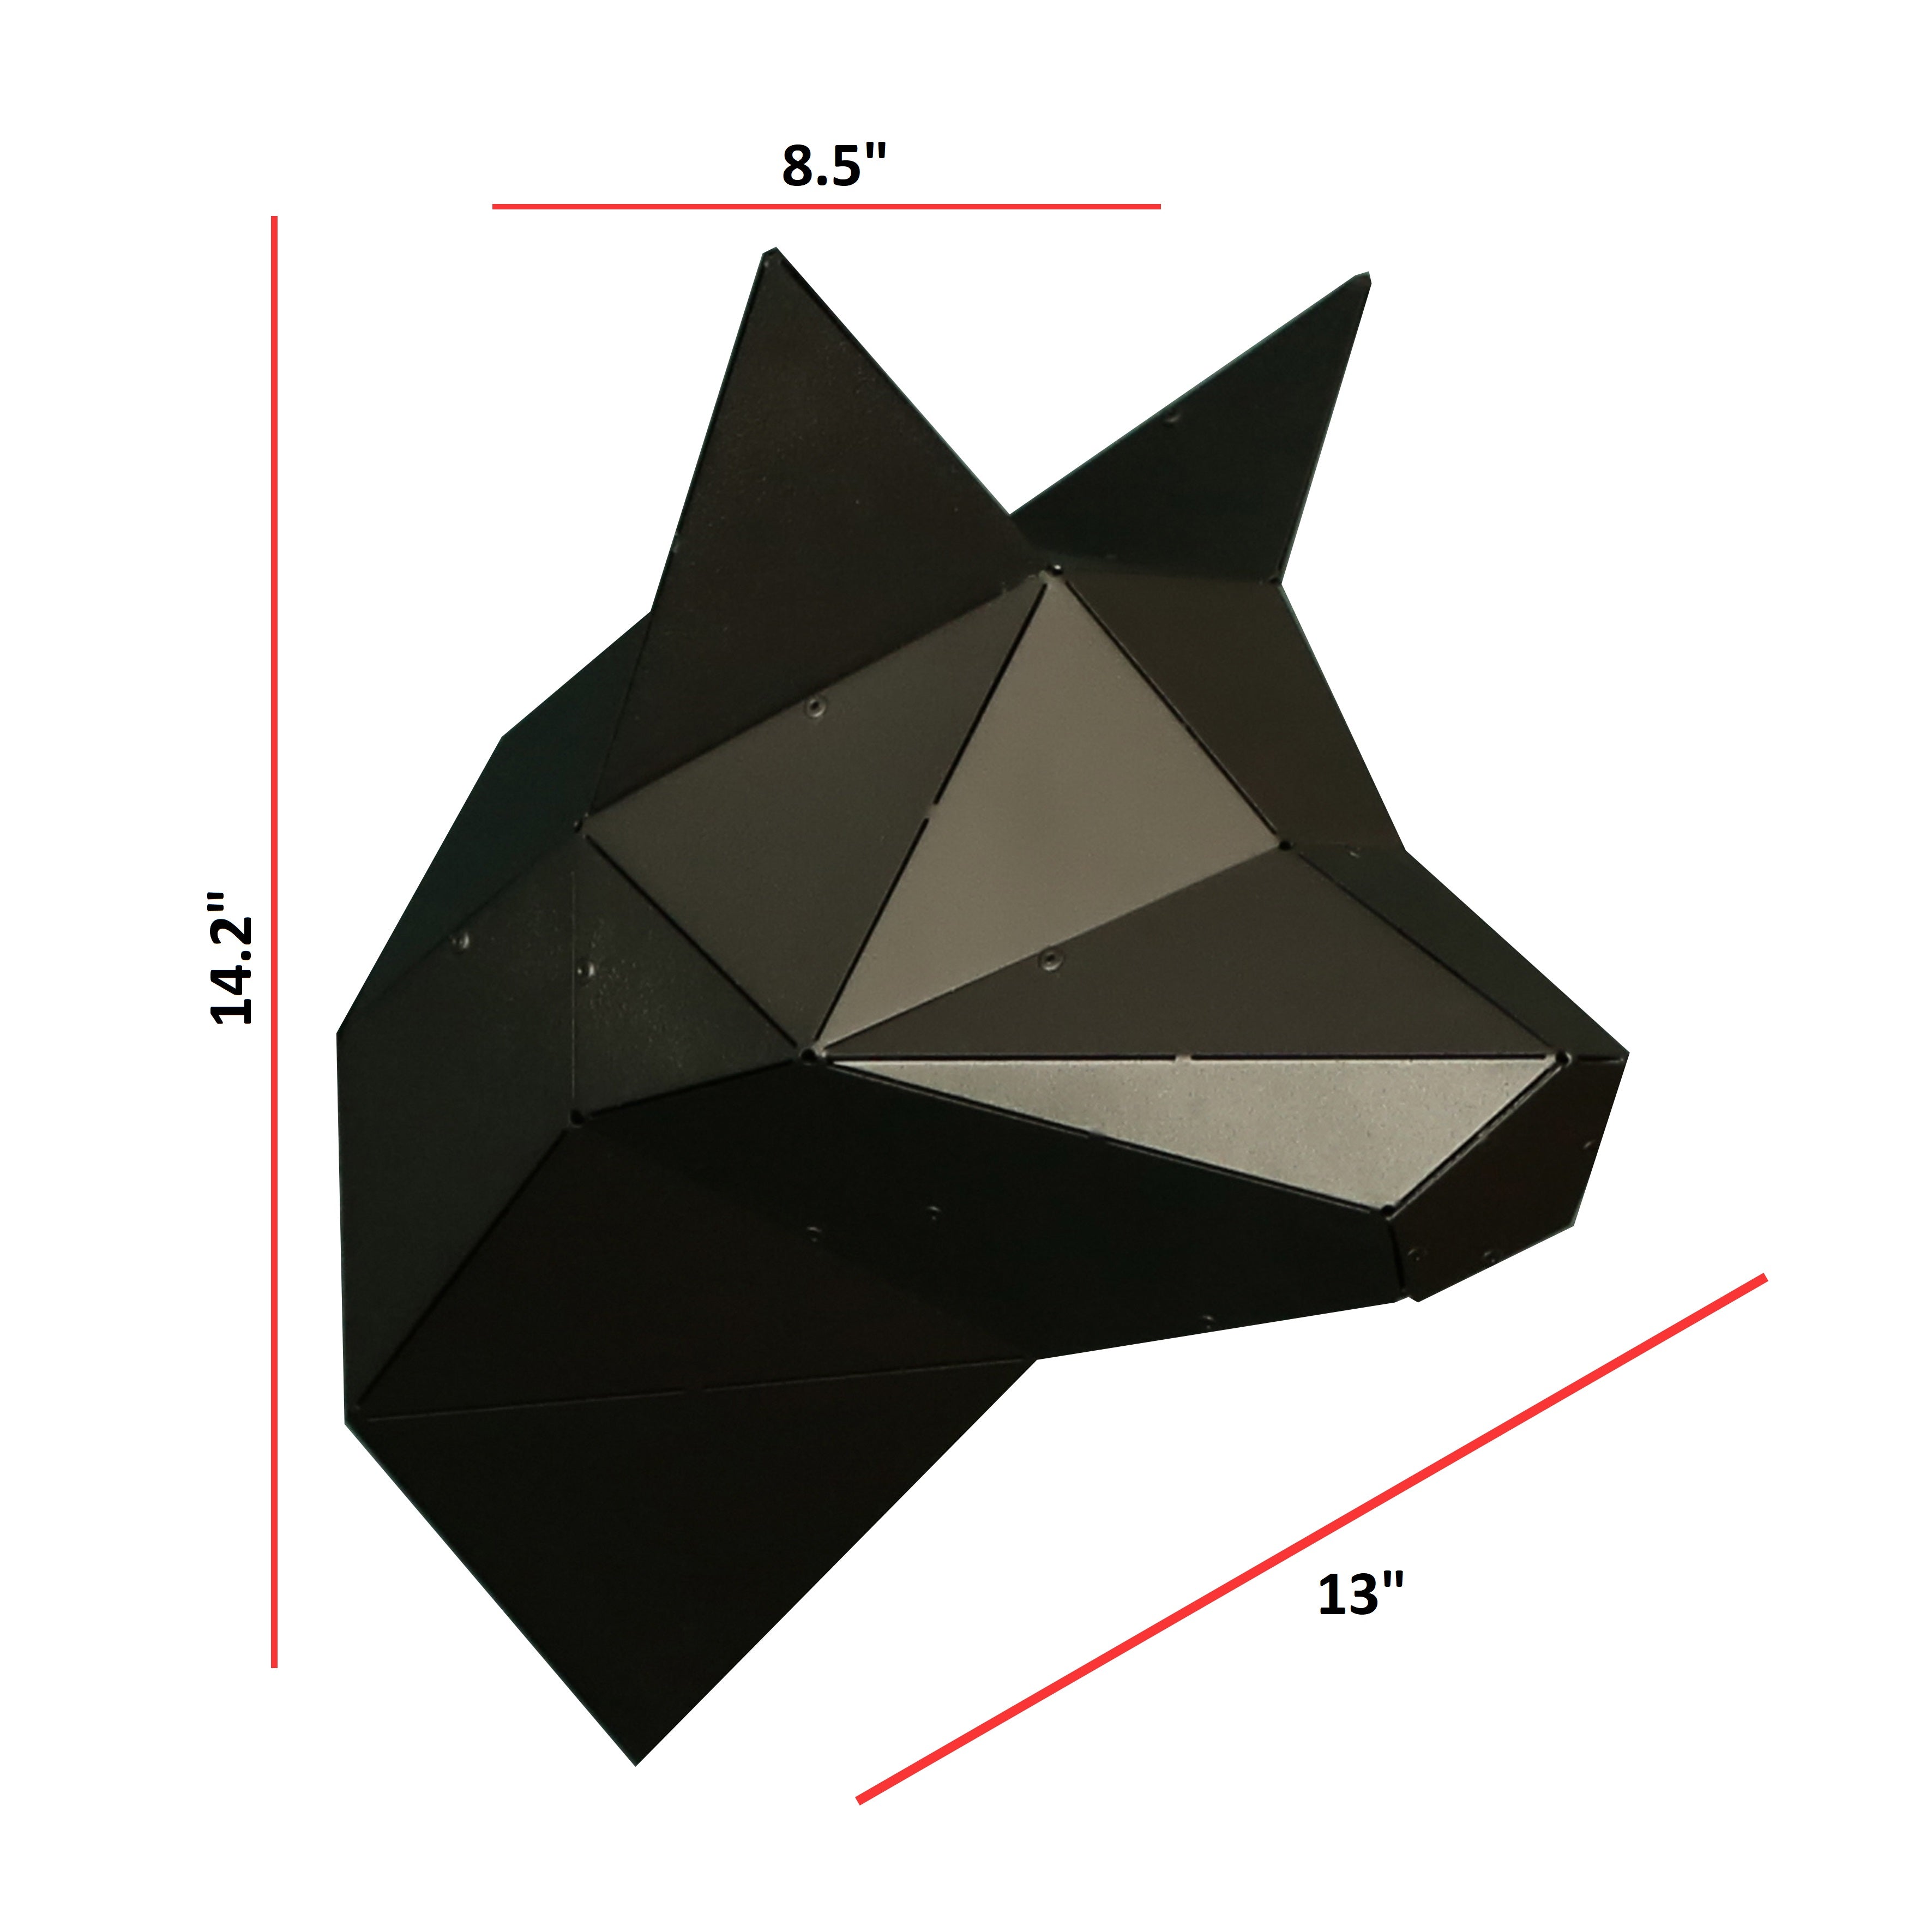 3D Geometric Wall Art of Fox